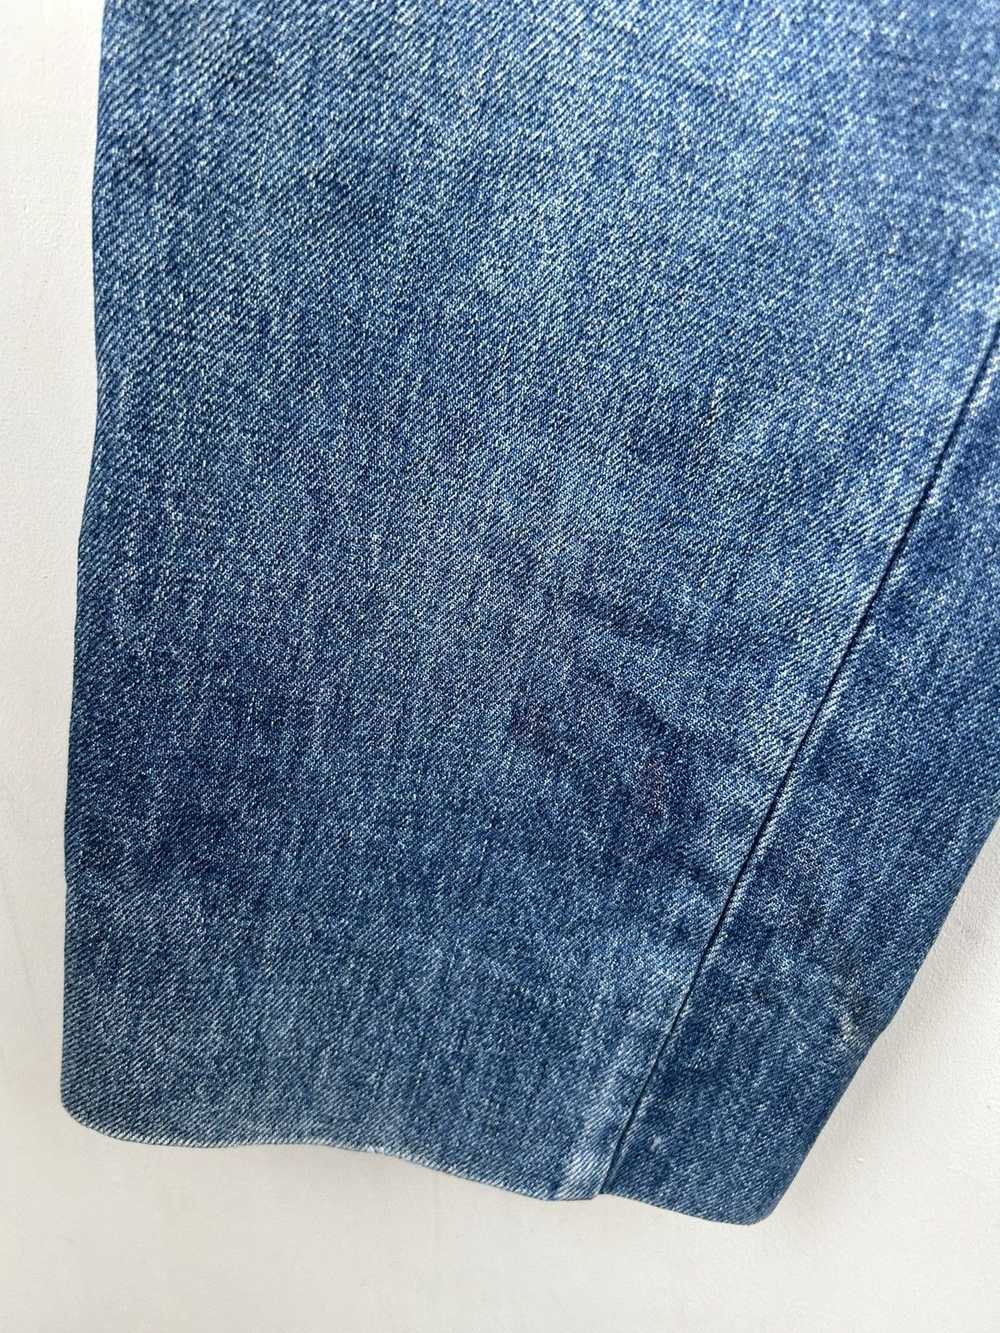 Givenchy × Streetwear × Vintage Vintage jeans - image 6